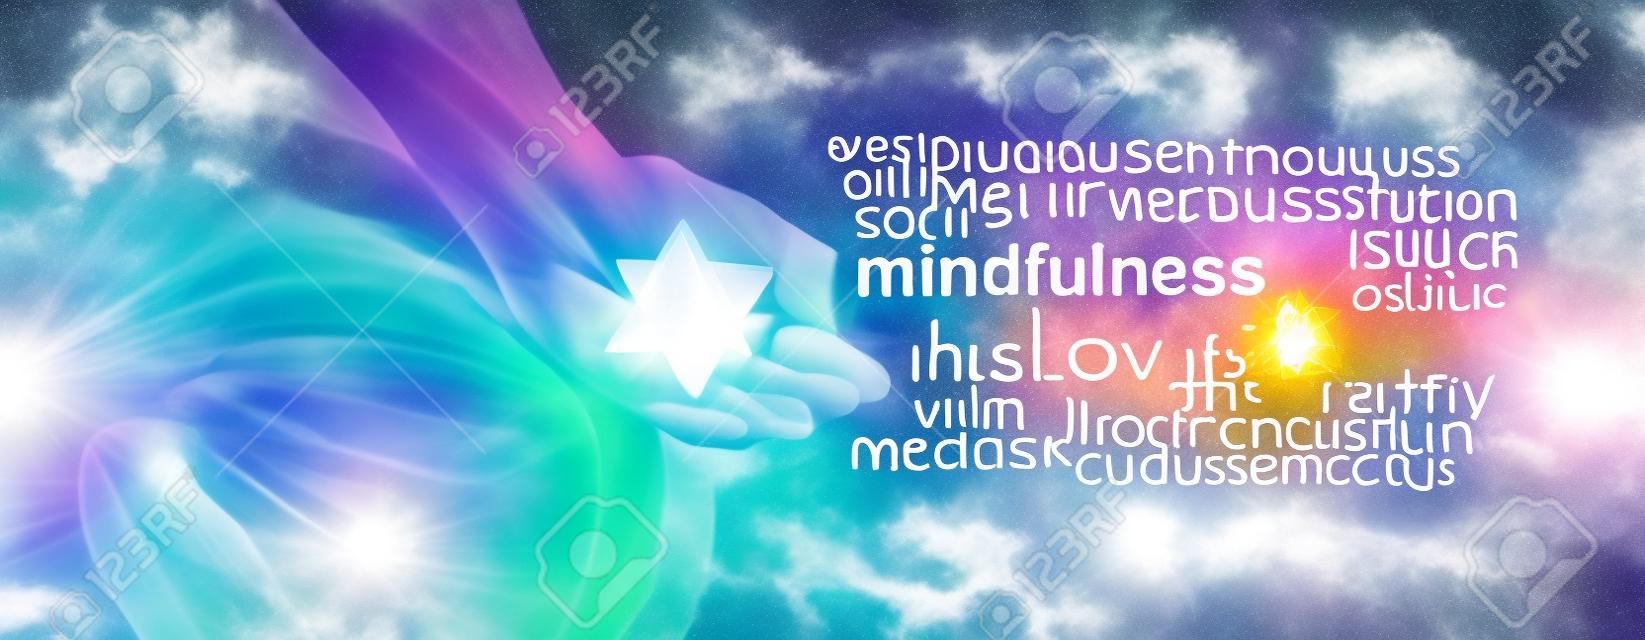 Mindfulness Meditatie Word Cloud Banner - Vrouw zittend in Lotus Positie aan de linkerkant met zonlicht stromend in het houden van een Merkabah kristal mediteren en een mindfulness woord wolk aan de rechterkant